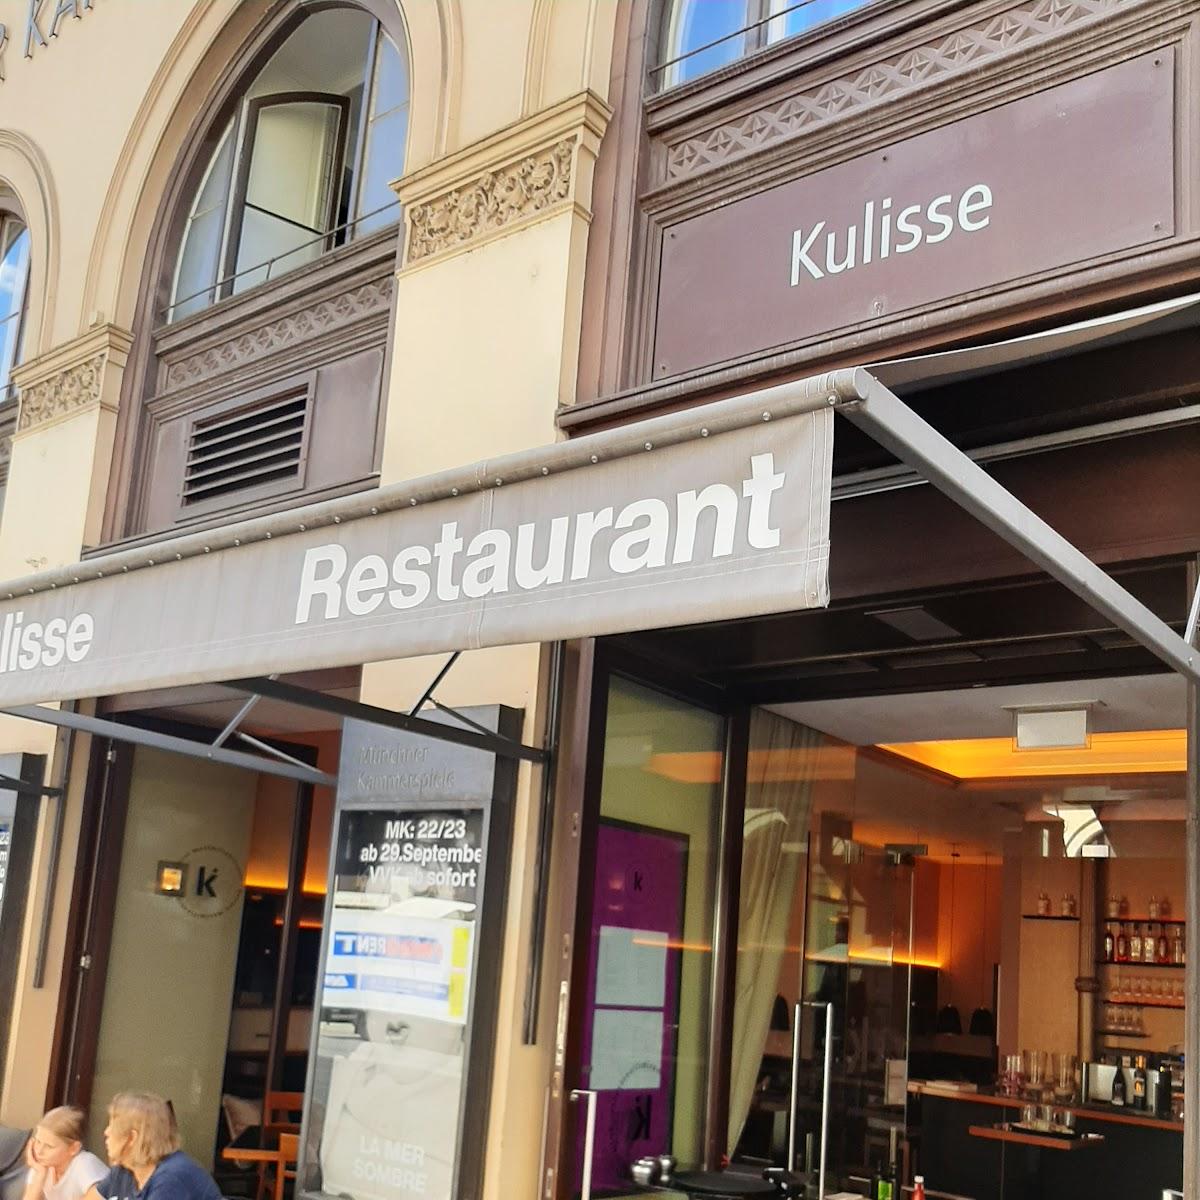 Restaurant "Kulisse" in München